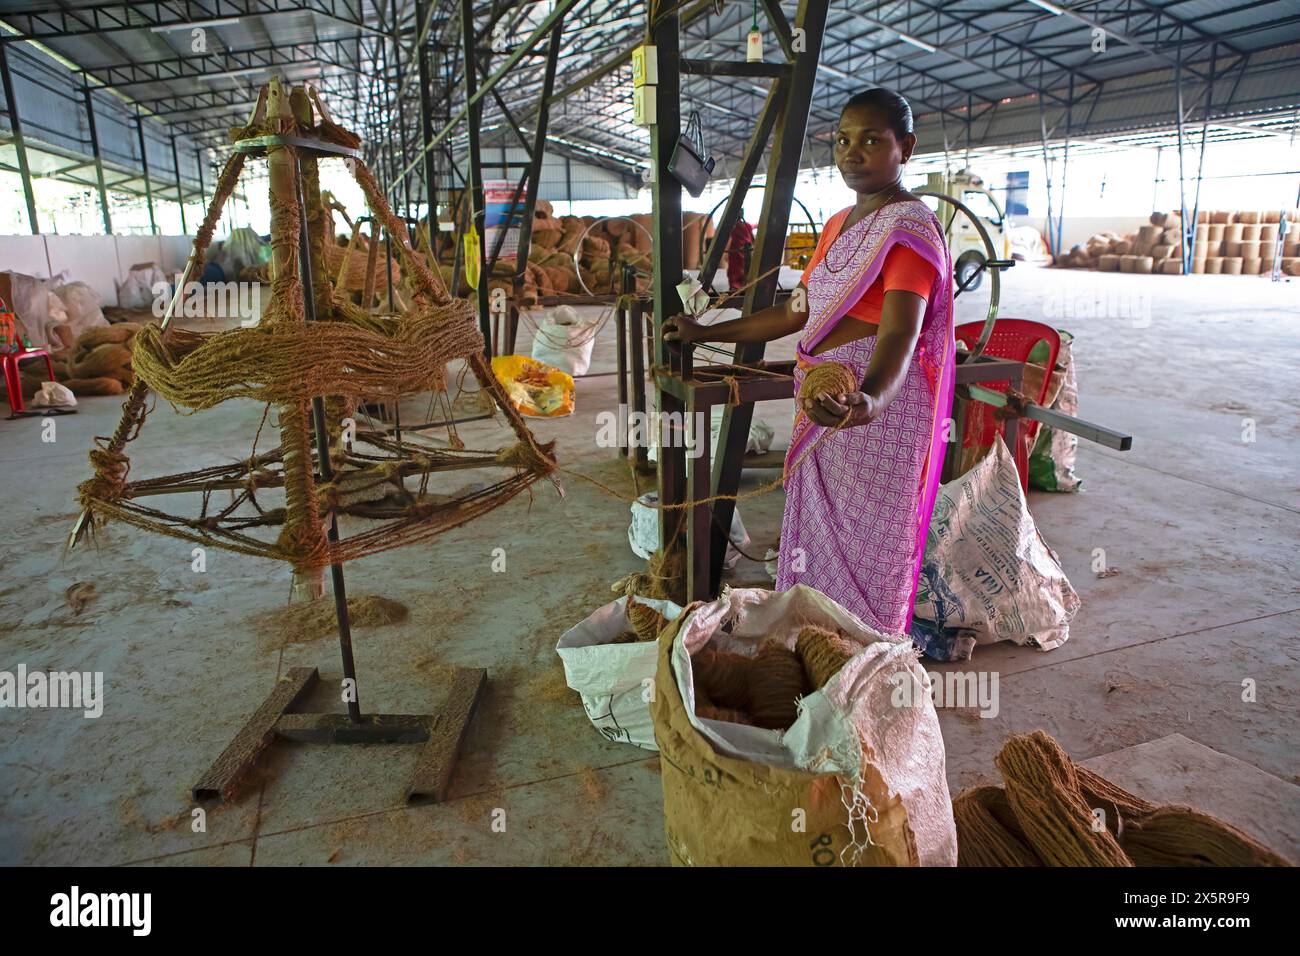 Ouvrier indien enroulant des fibres de coco dans des bobines dans le filature des ouvriers Coir Mats and Mattings Coir Mats, production de tapis de coco Banque D'Images